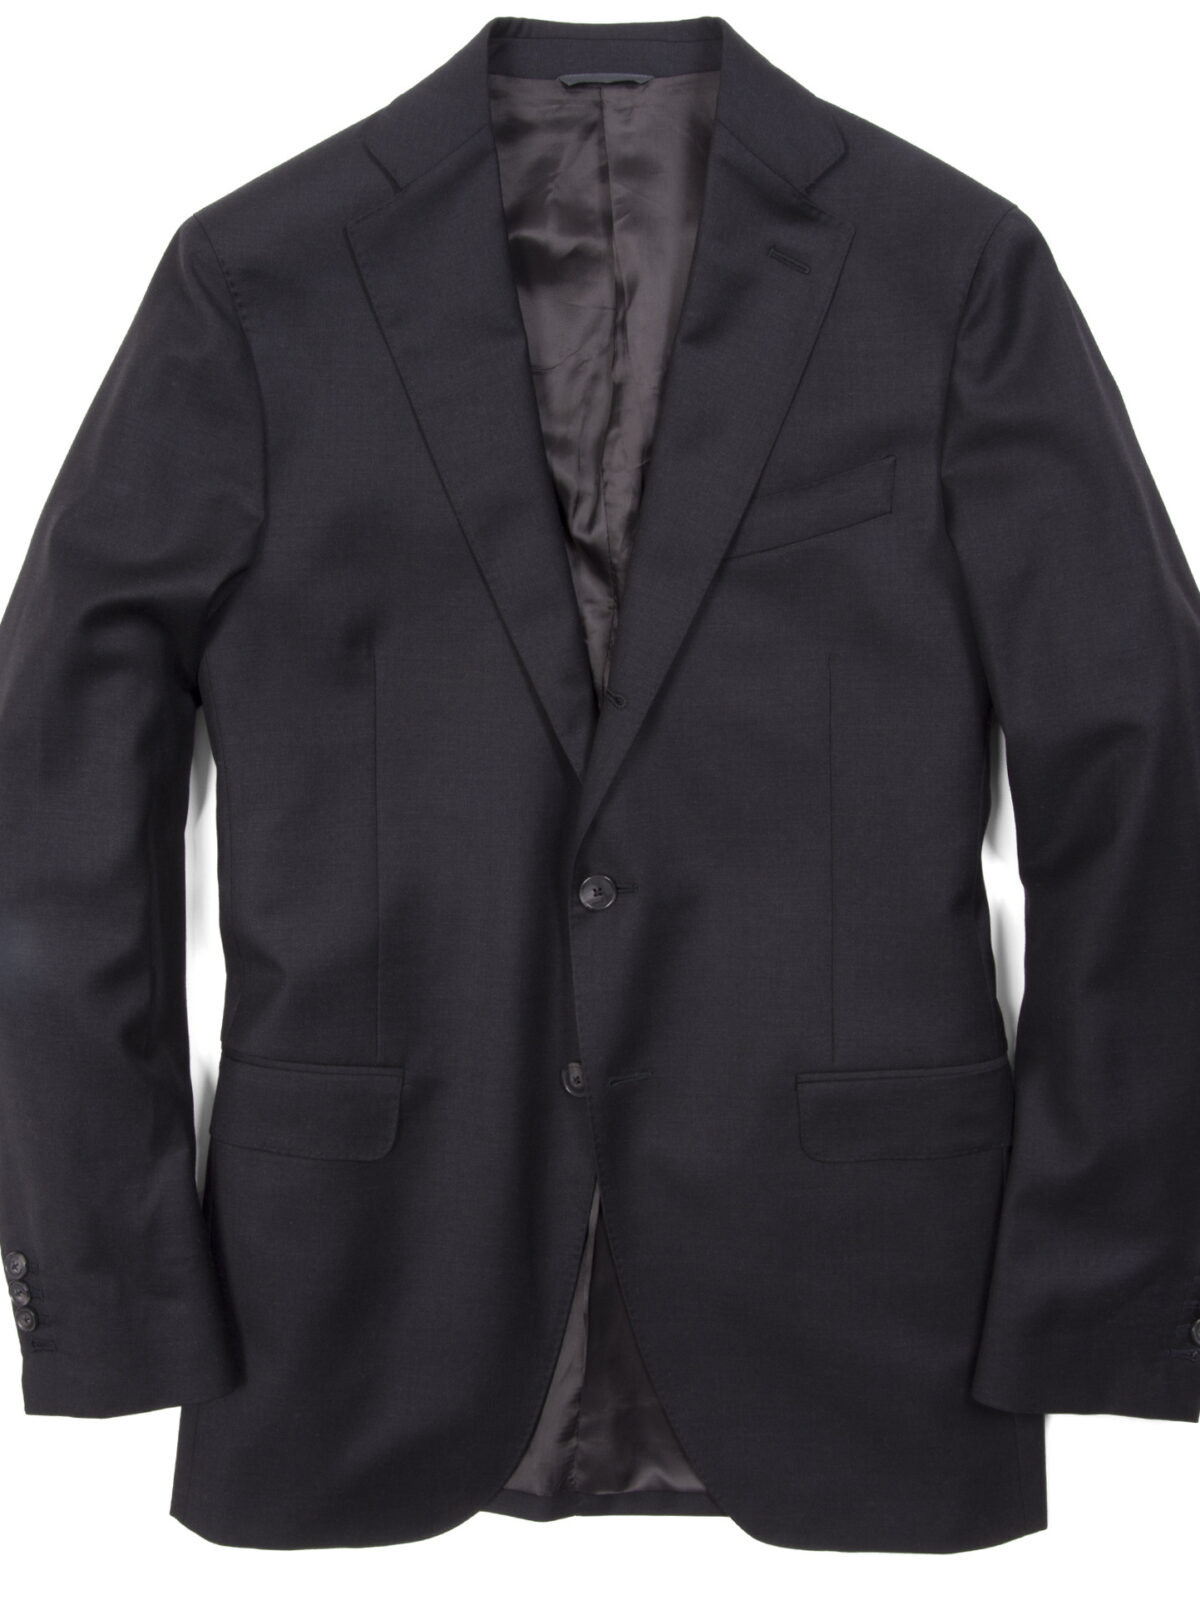 Allen Charcoal Suit